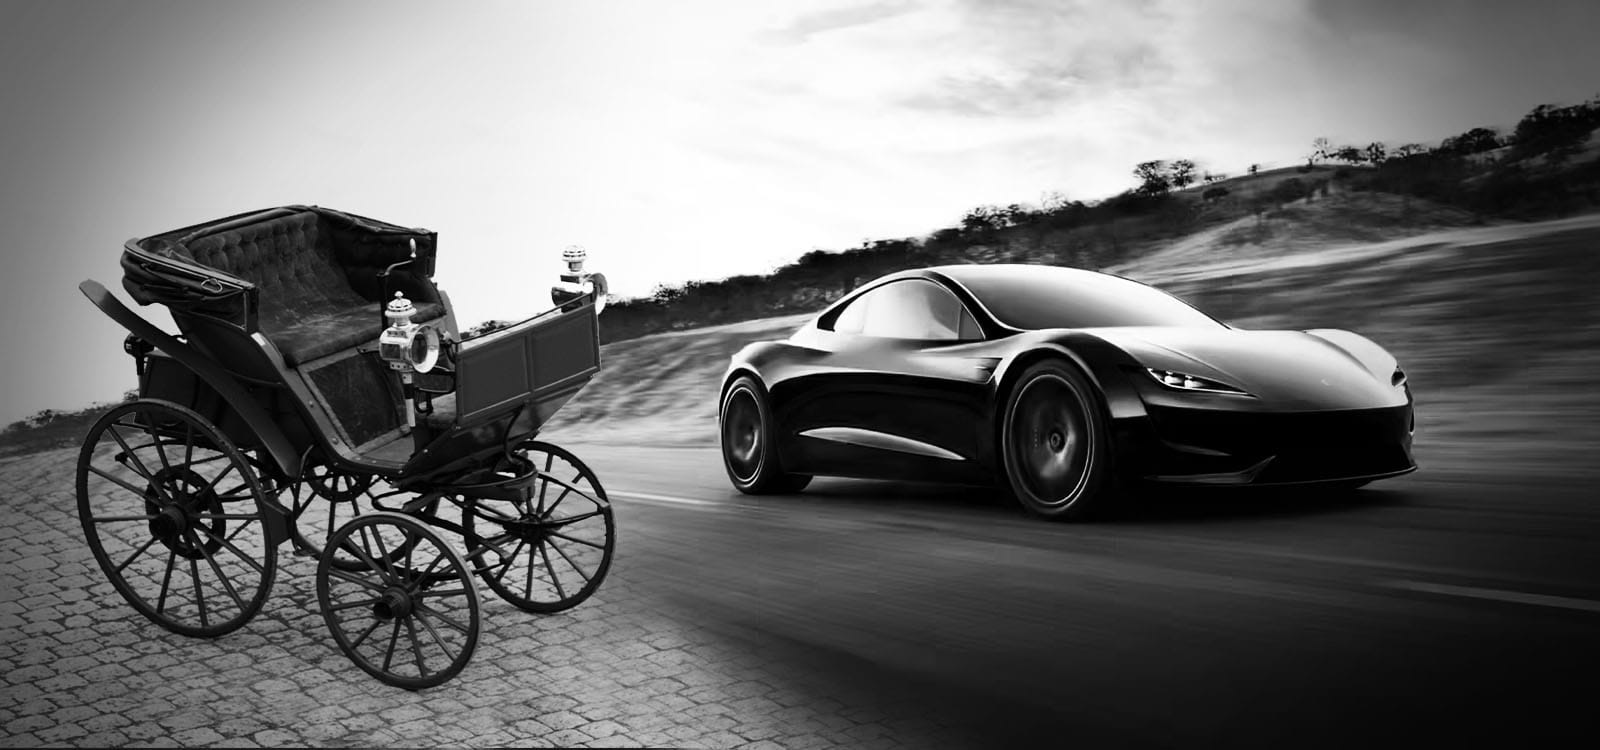 200 χρόνια ηλεκτροκίνησης: Από τα αλλόκοτα οχήματα του 1800 στα λαμπερά Tesla